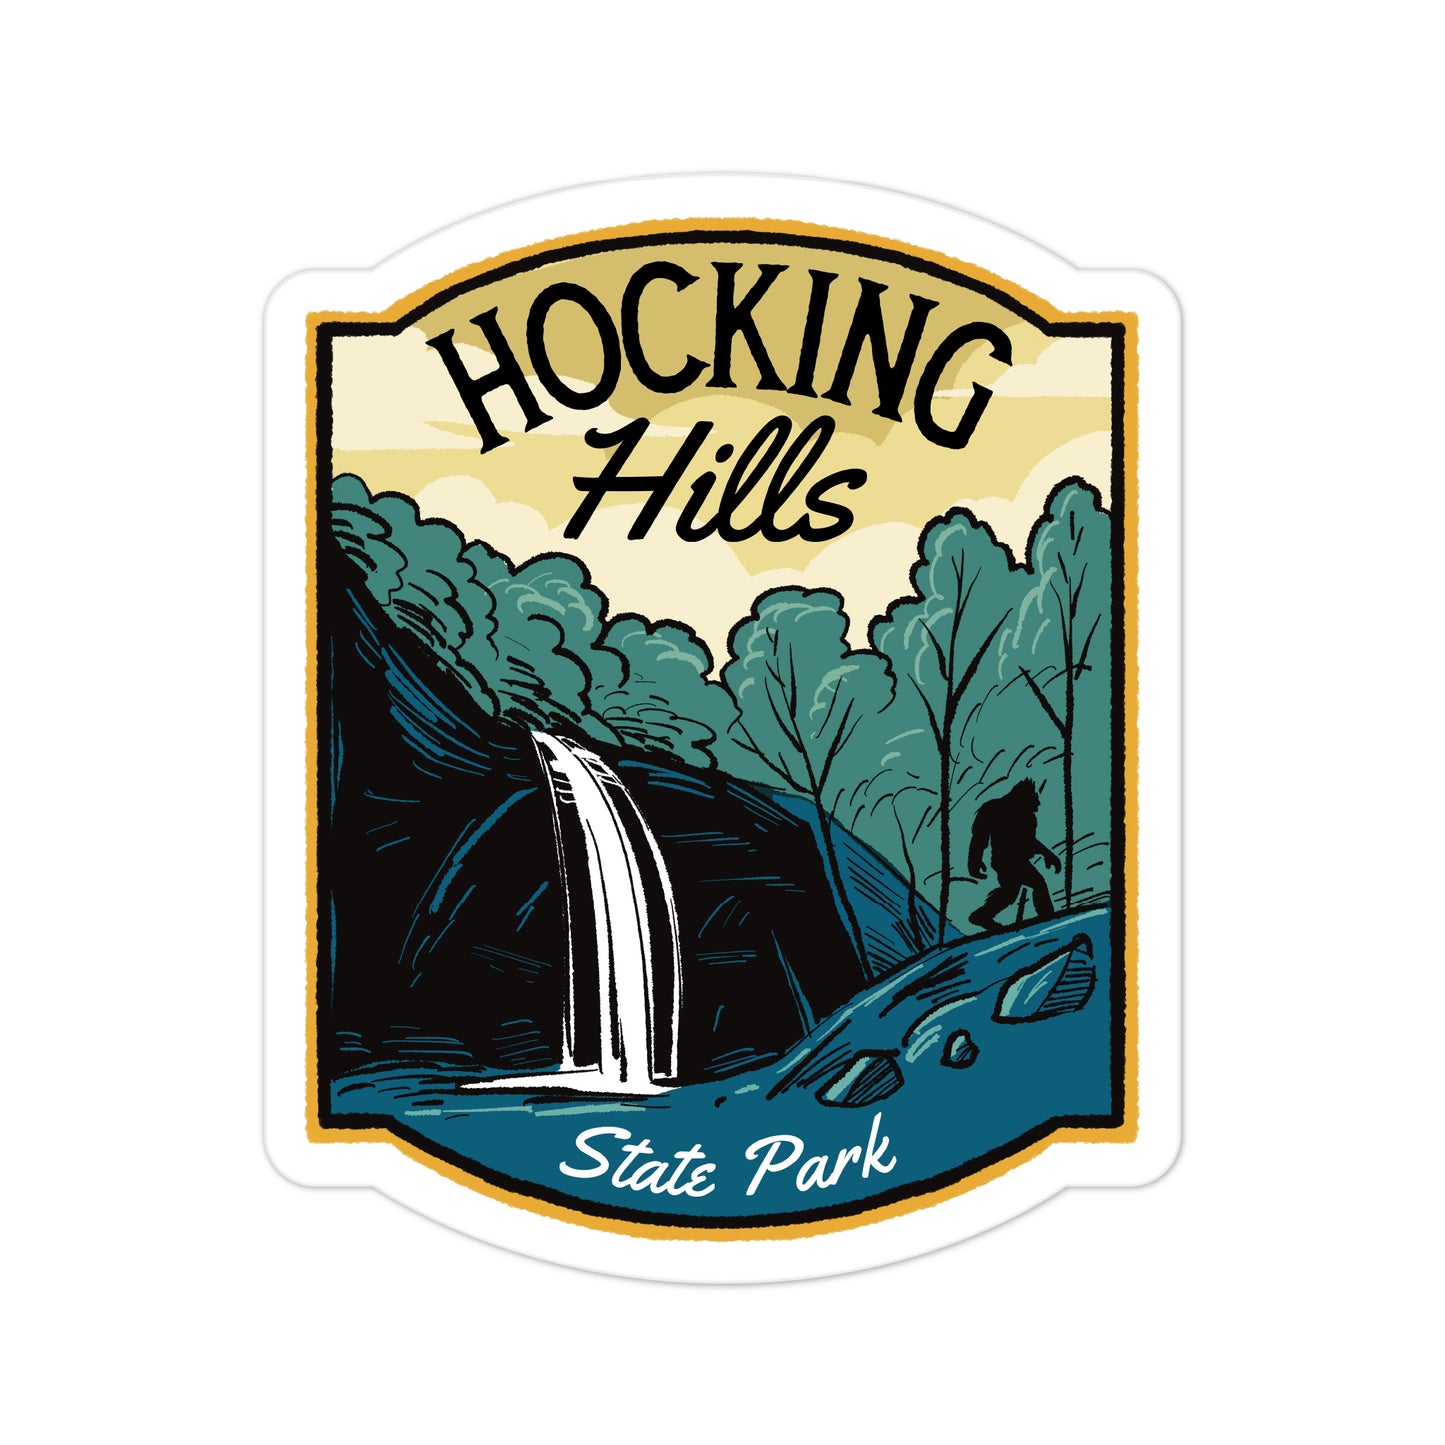 A sticker of Hocking Hills State Park